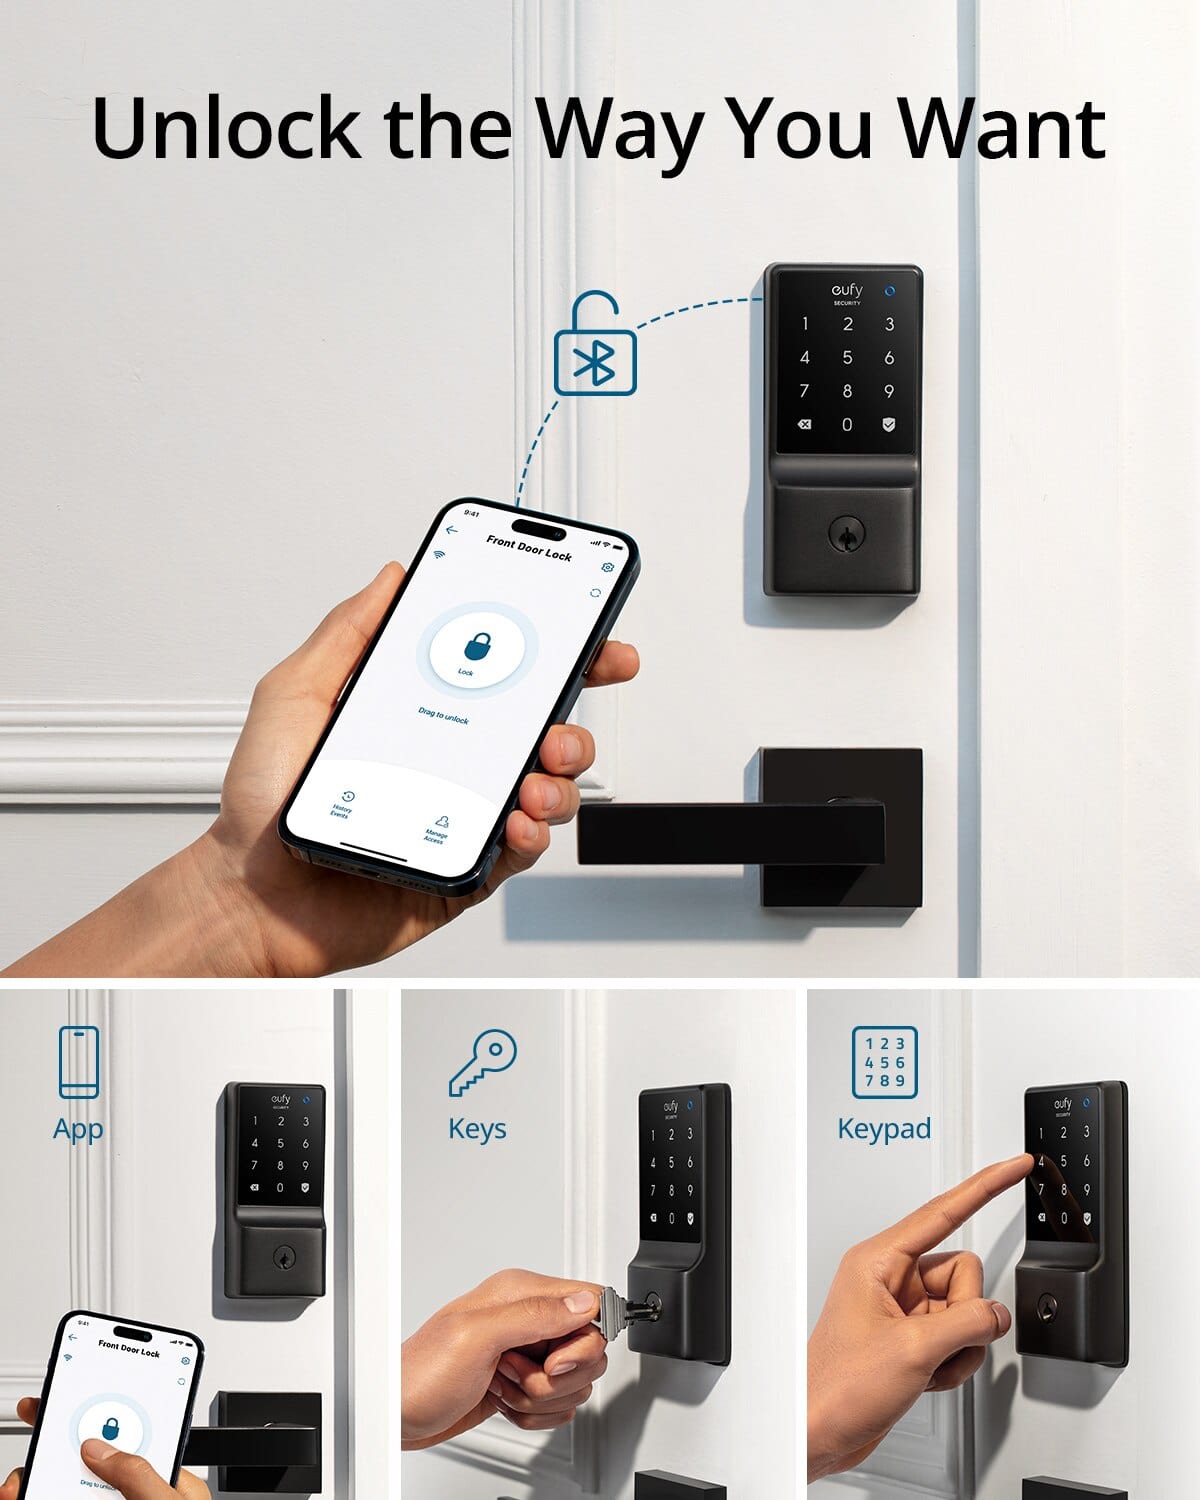 eufy eufy, Smart Door Lock, C210 version, 5-in-1 Keyless Entry Door Lock, Built-in WiFi